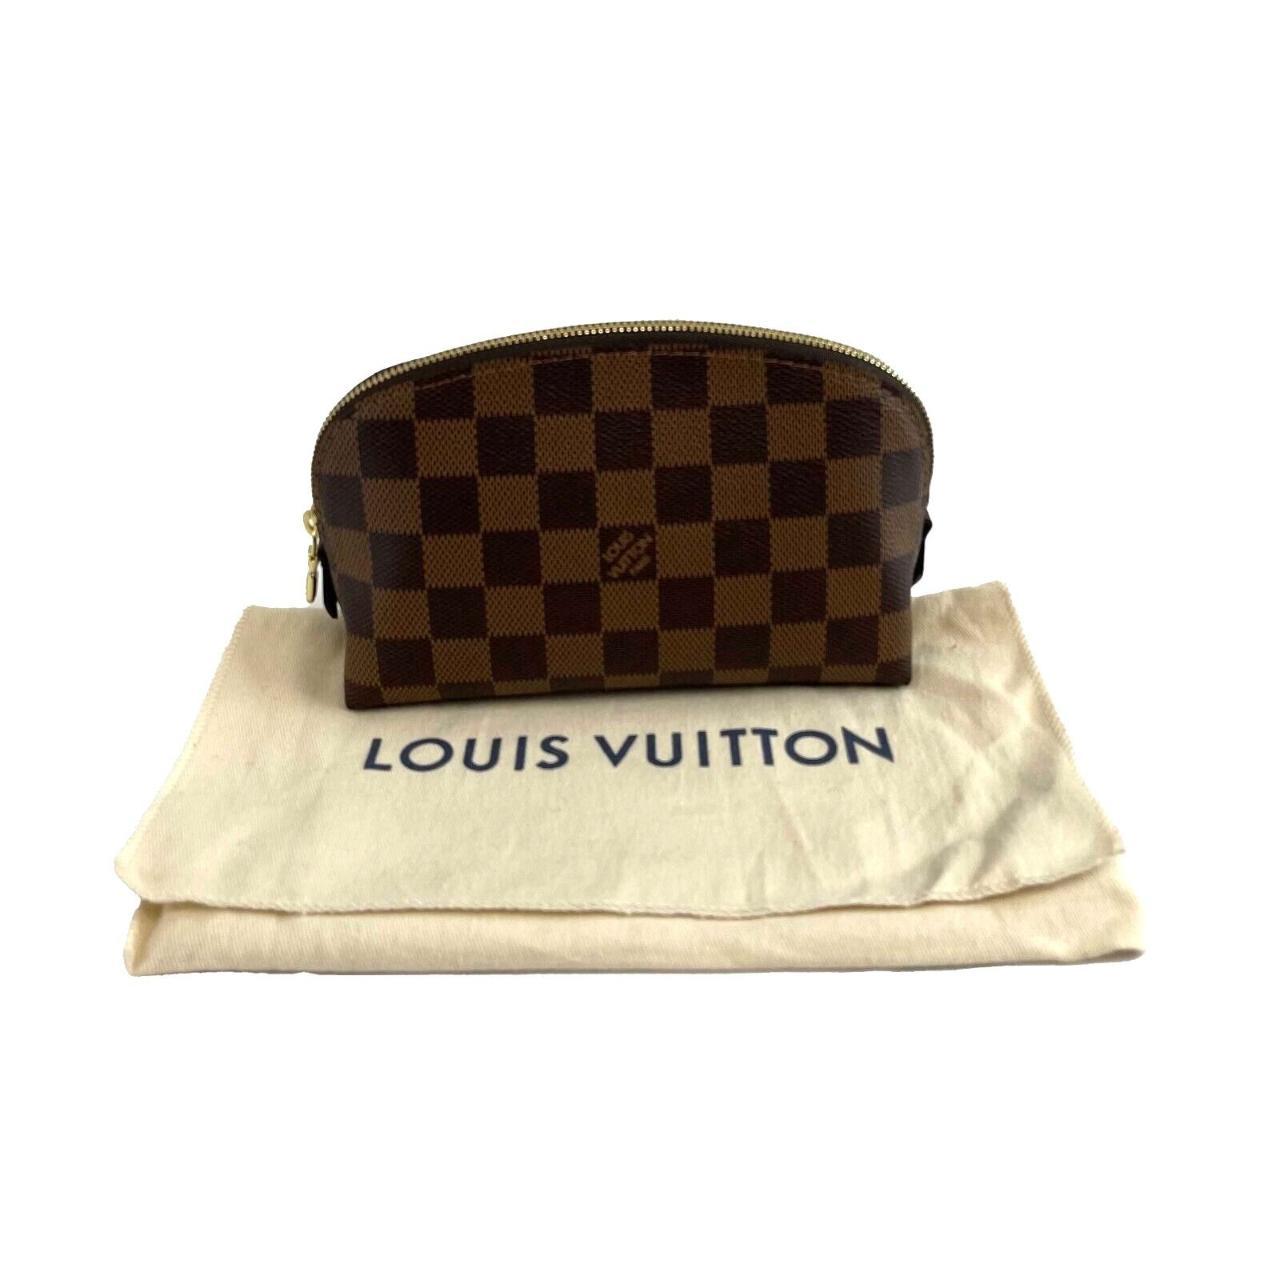 Louis Vuitton - Excellent - Damier Ebene Cosmetic - Depop